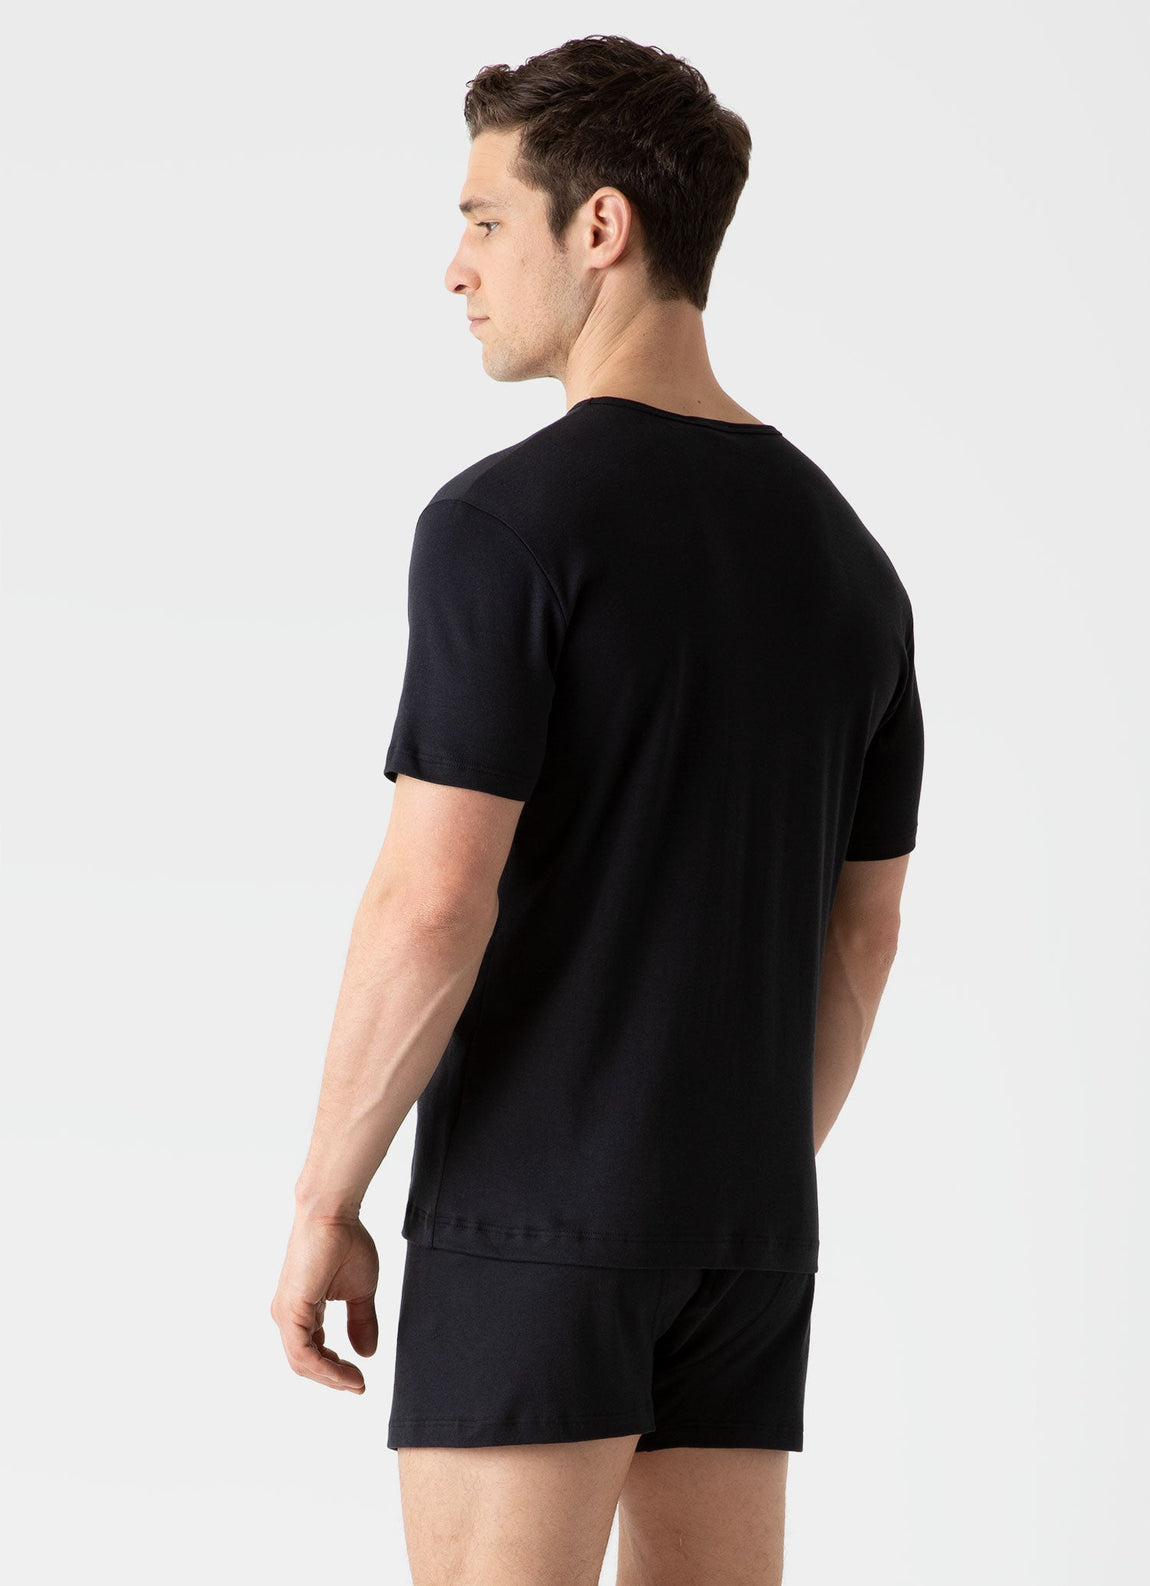 Men's Sea Island Cotton Underwear T-shirt in Black